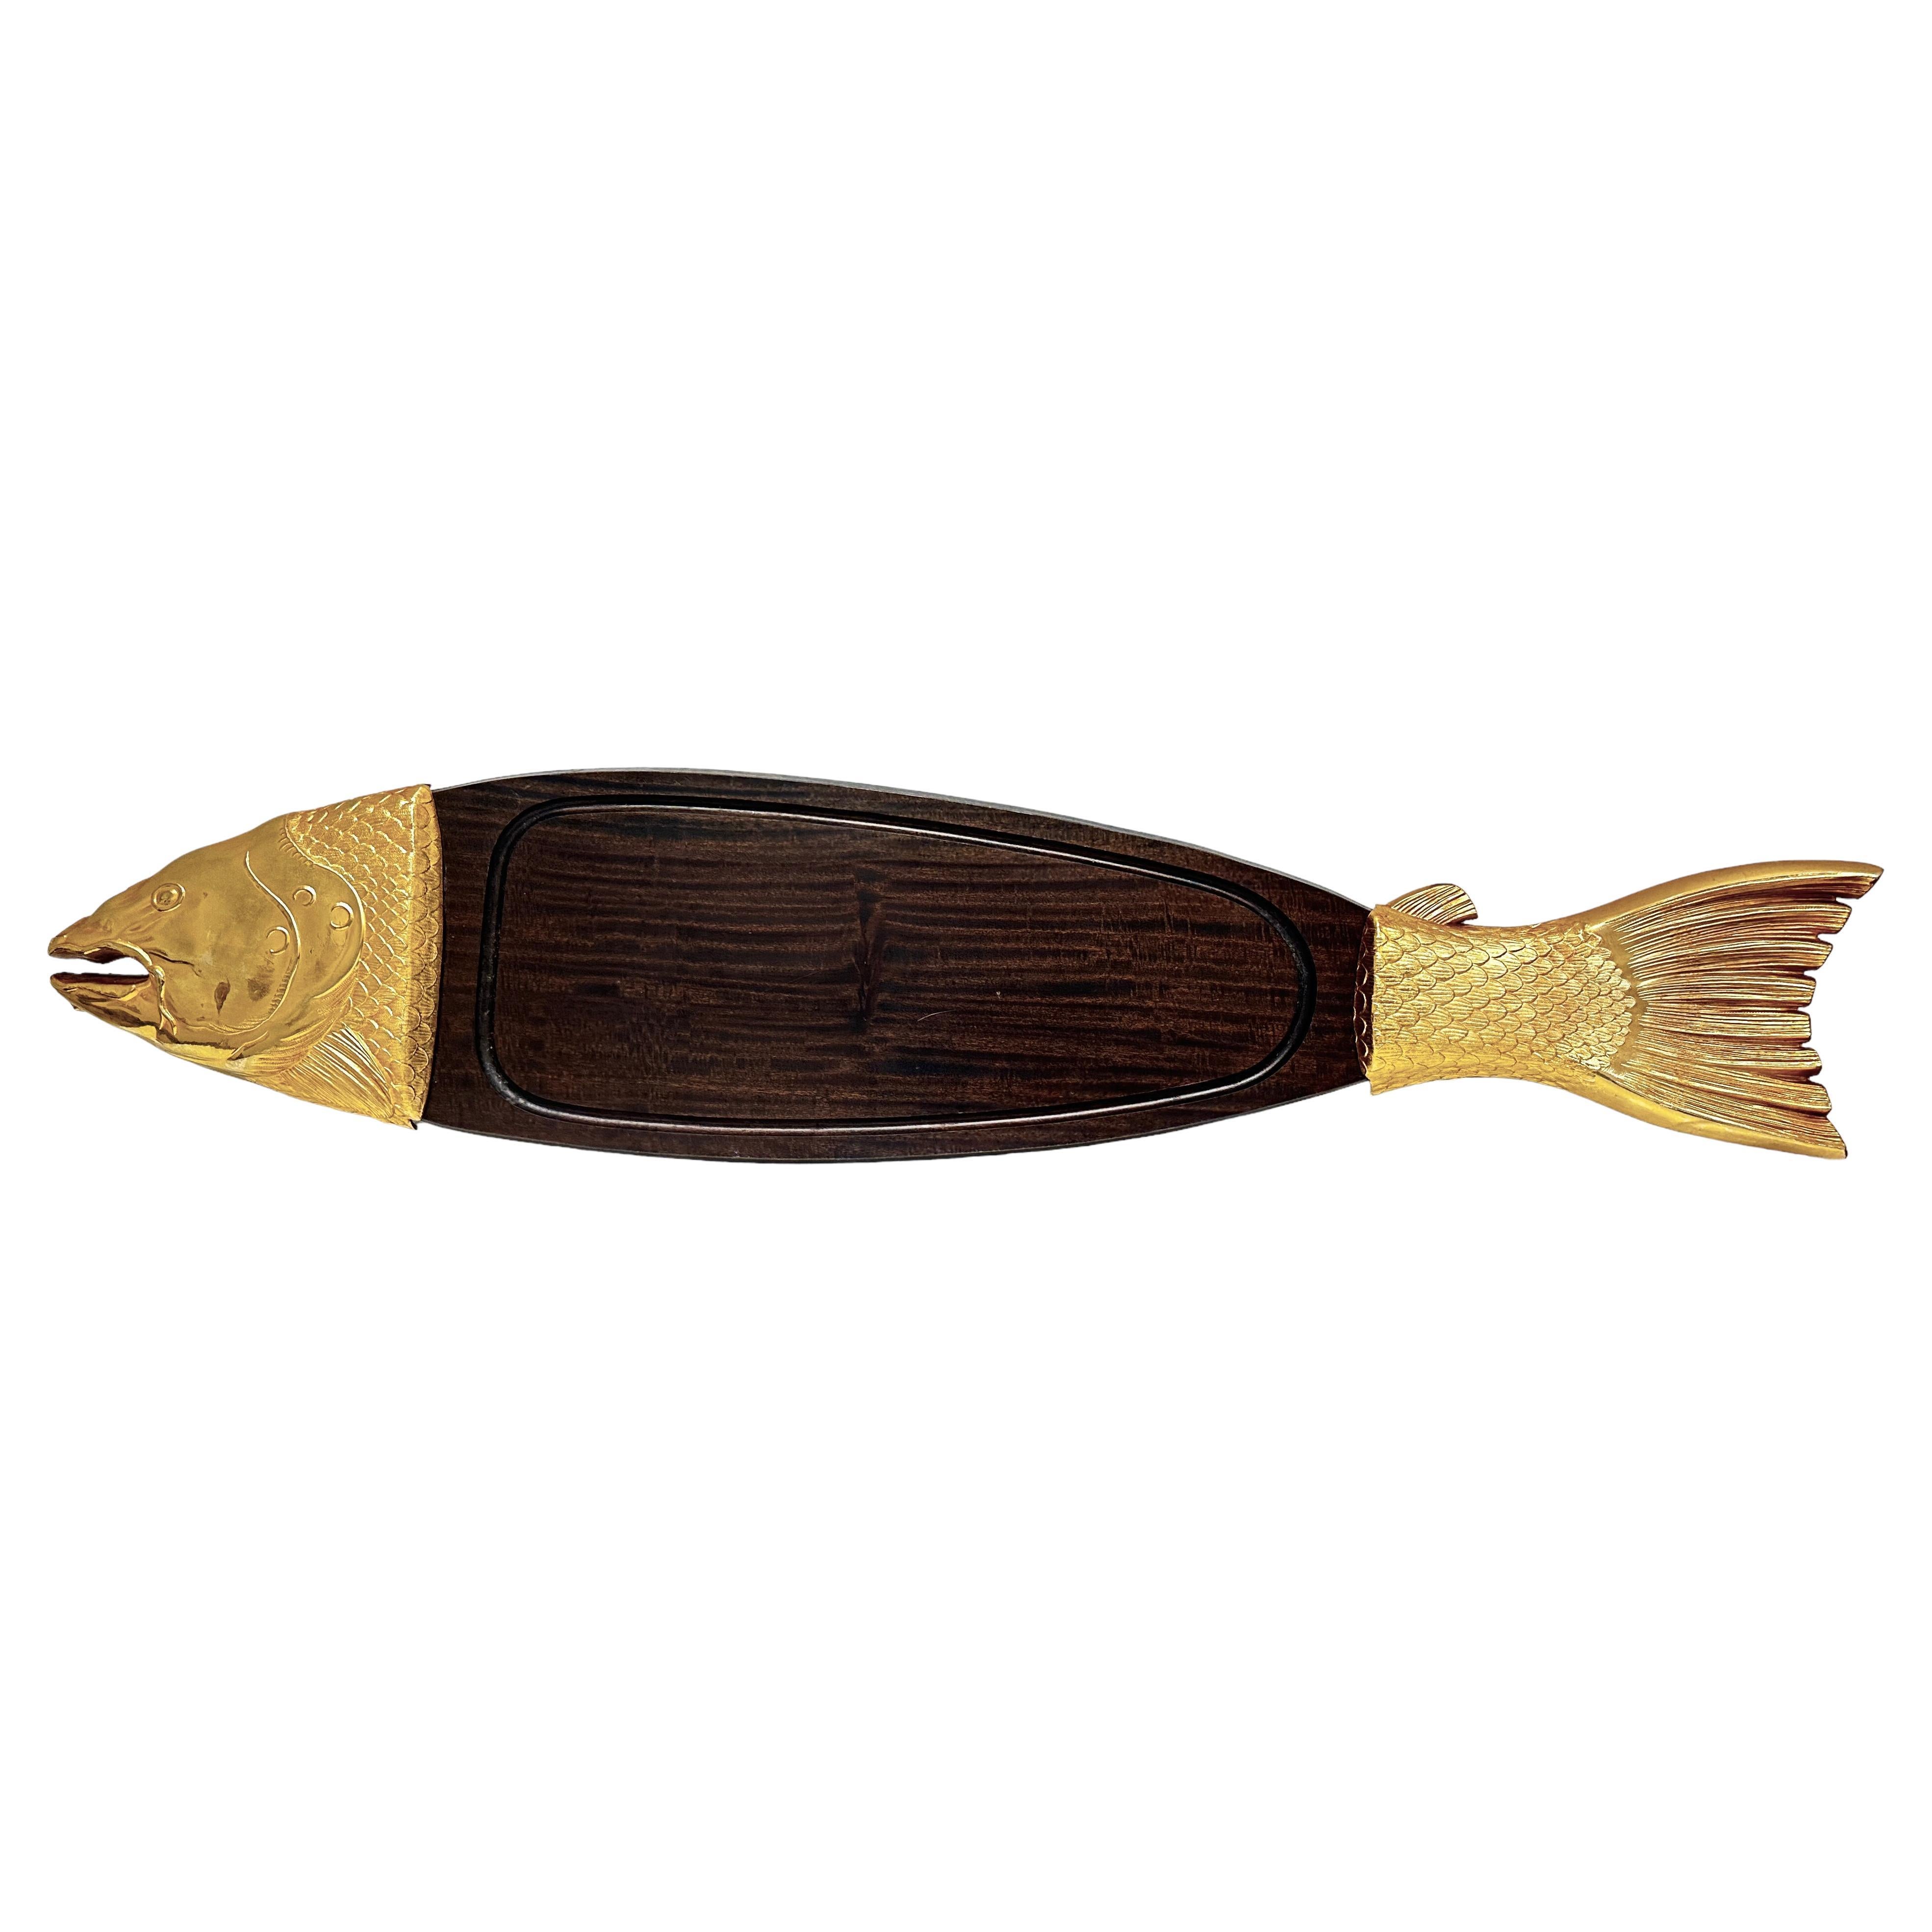 Lachs Vergoldetes Metall- und Holztablett-Teller mit Fischmotiv aus dem 20. Jahrhundert, Vintage 1970er